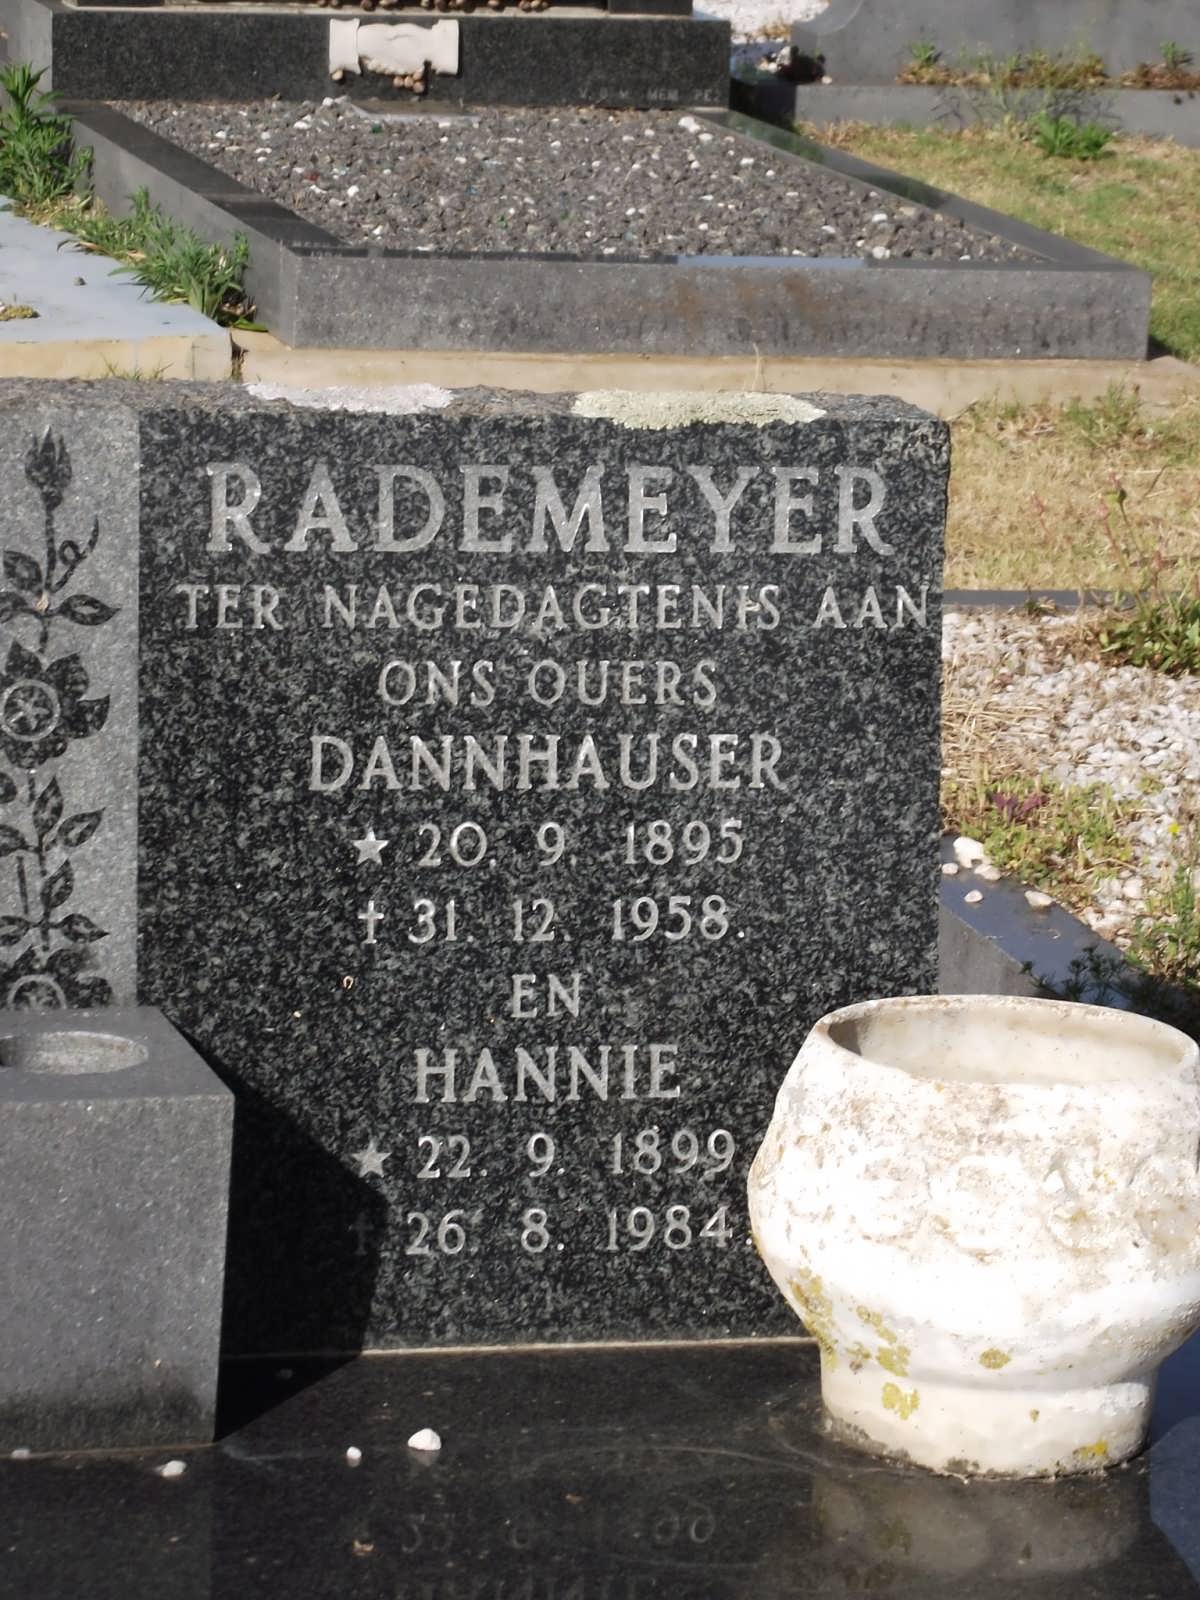 RADEMEYER Dannhauser 1895-1958 & Hannie 1899-1984